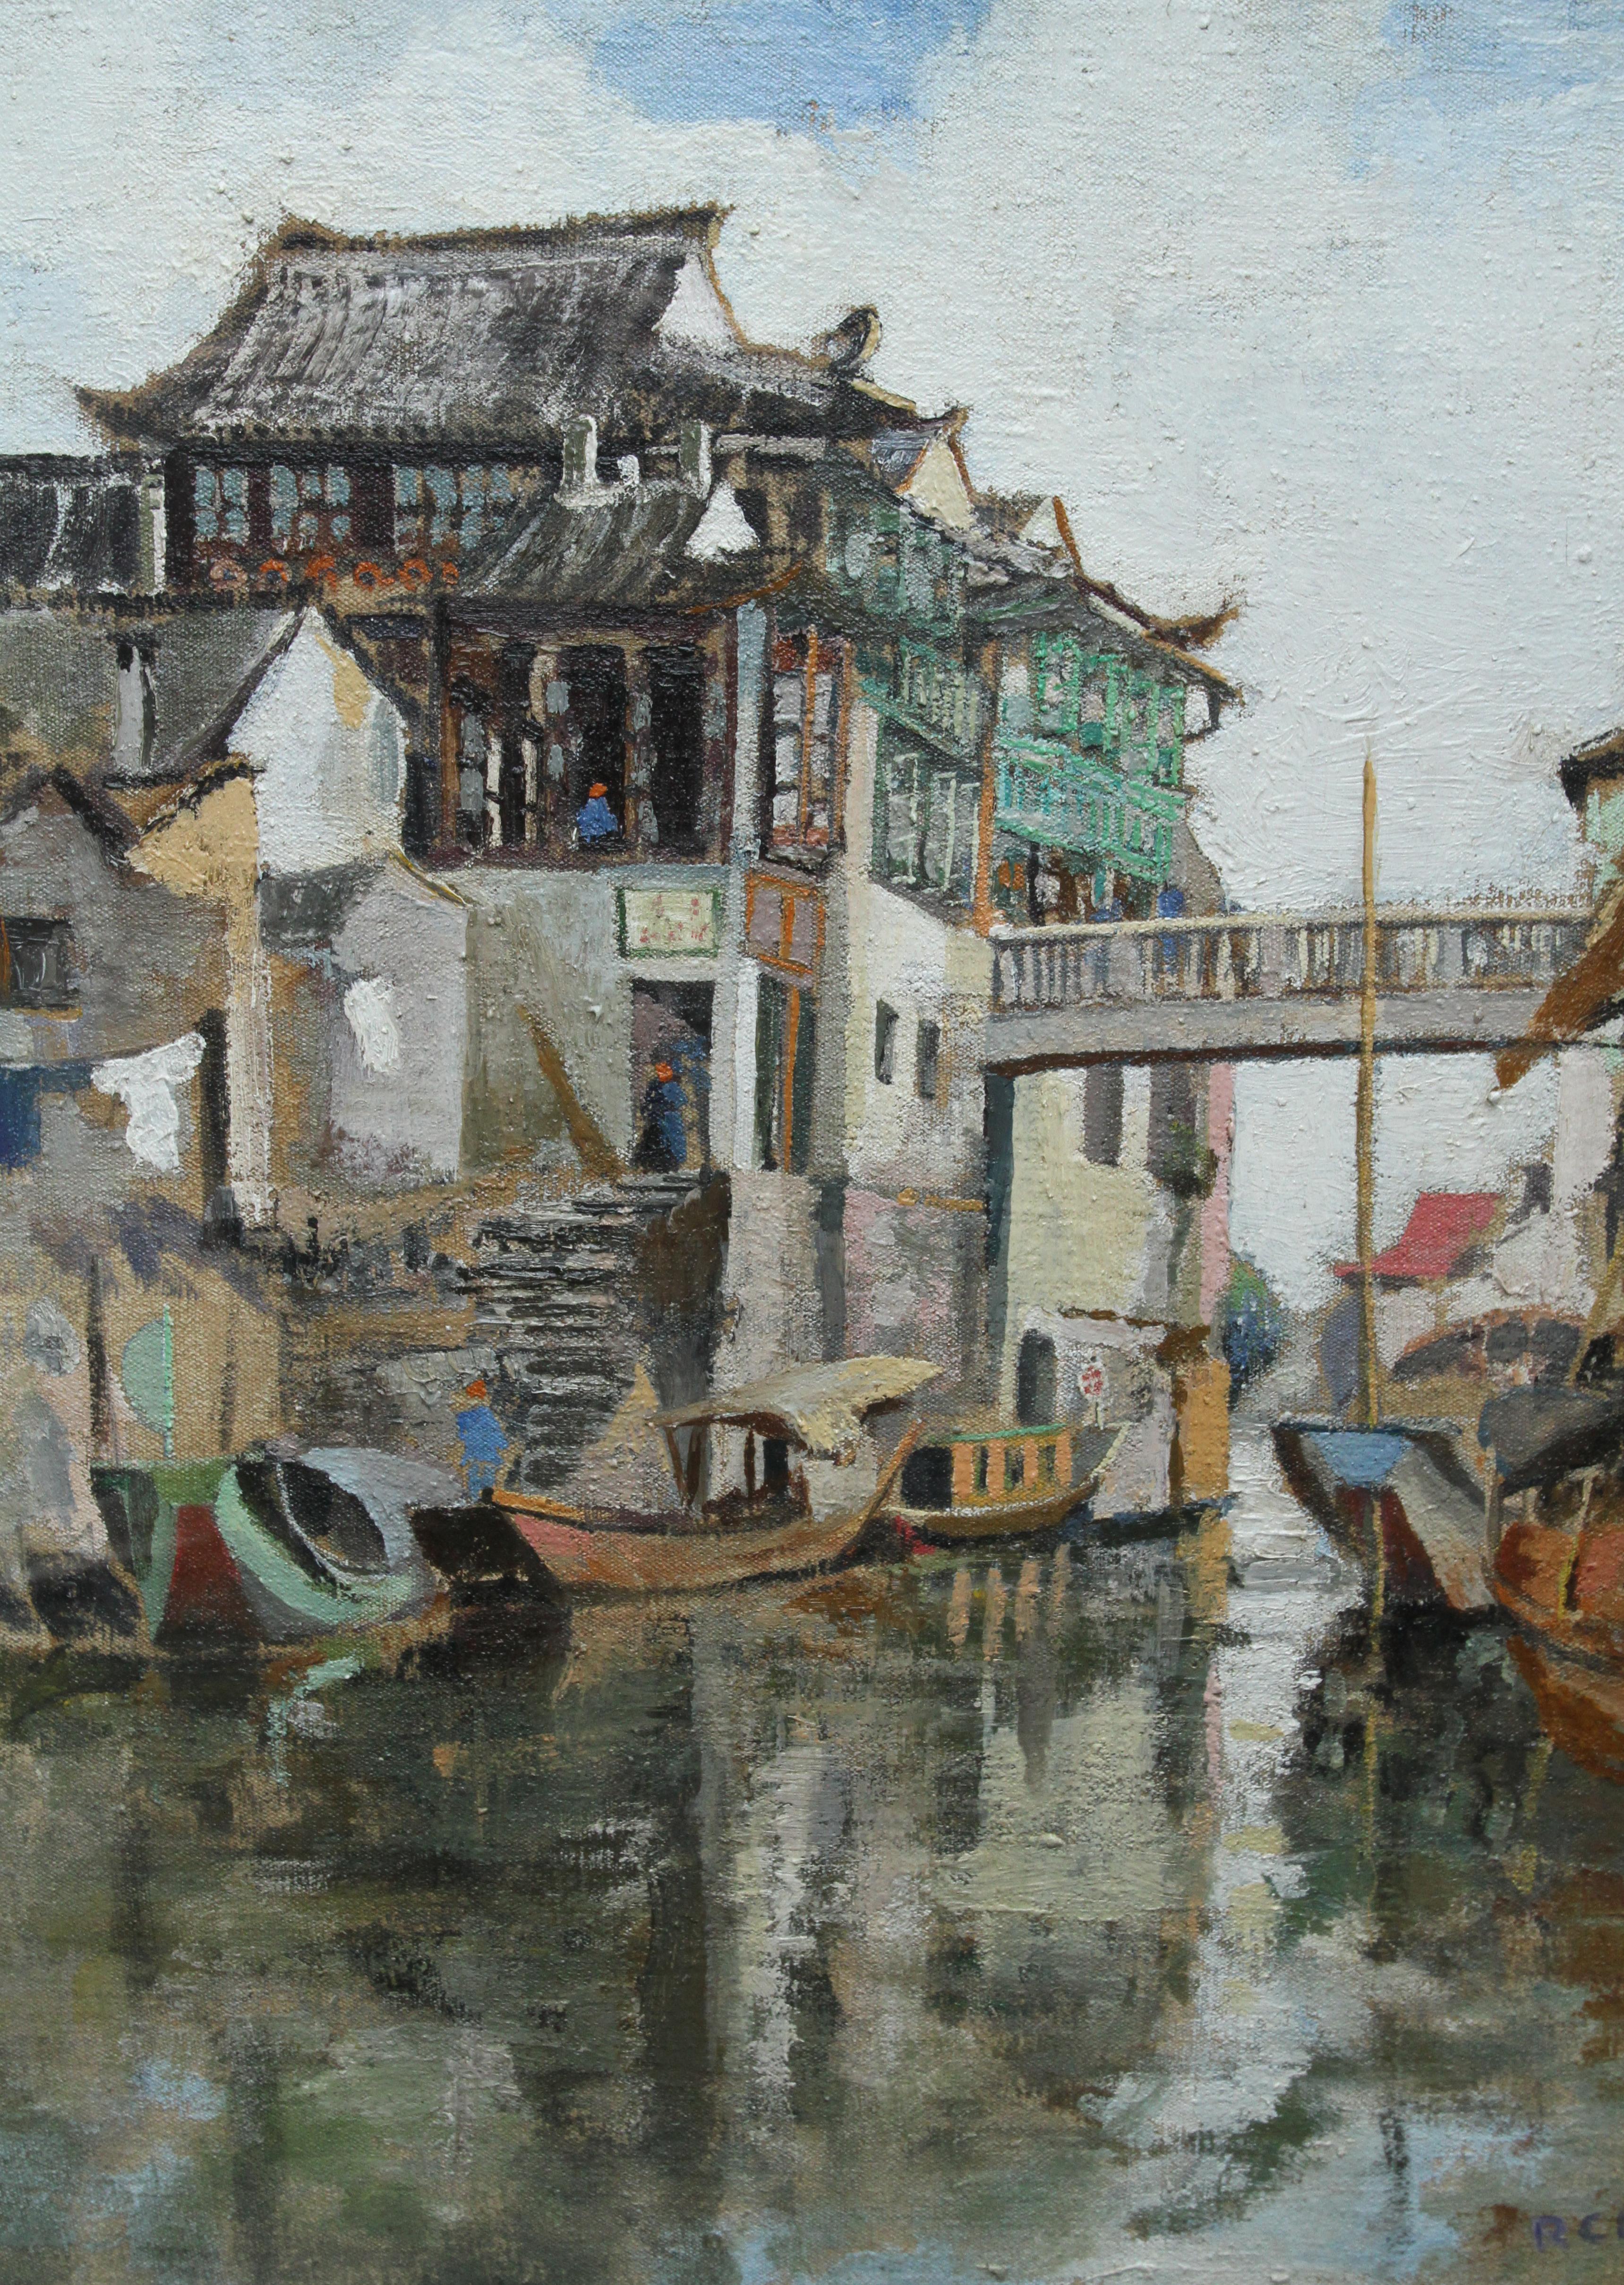 Soochow/Suzchou Chine - Peinture à l'huile impressionniste écossaise des années 20 - Chine du canal - Impressionnisme Painting par Robert Cecil Robertson